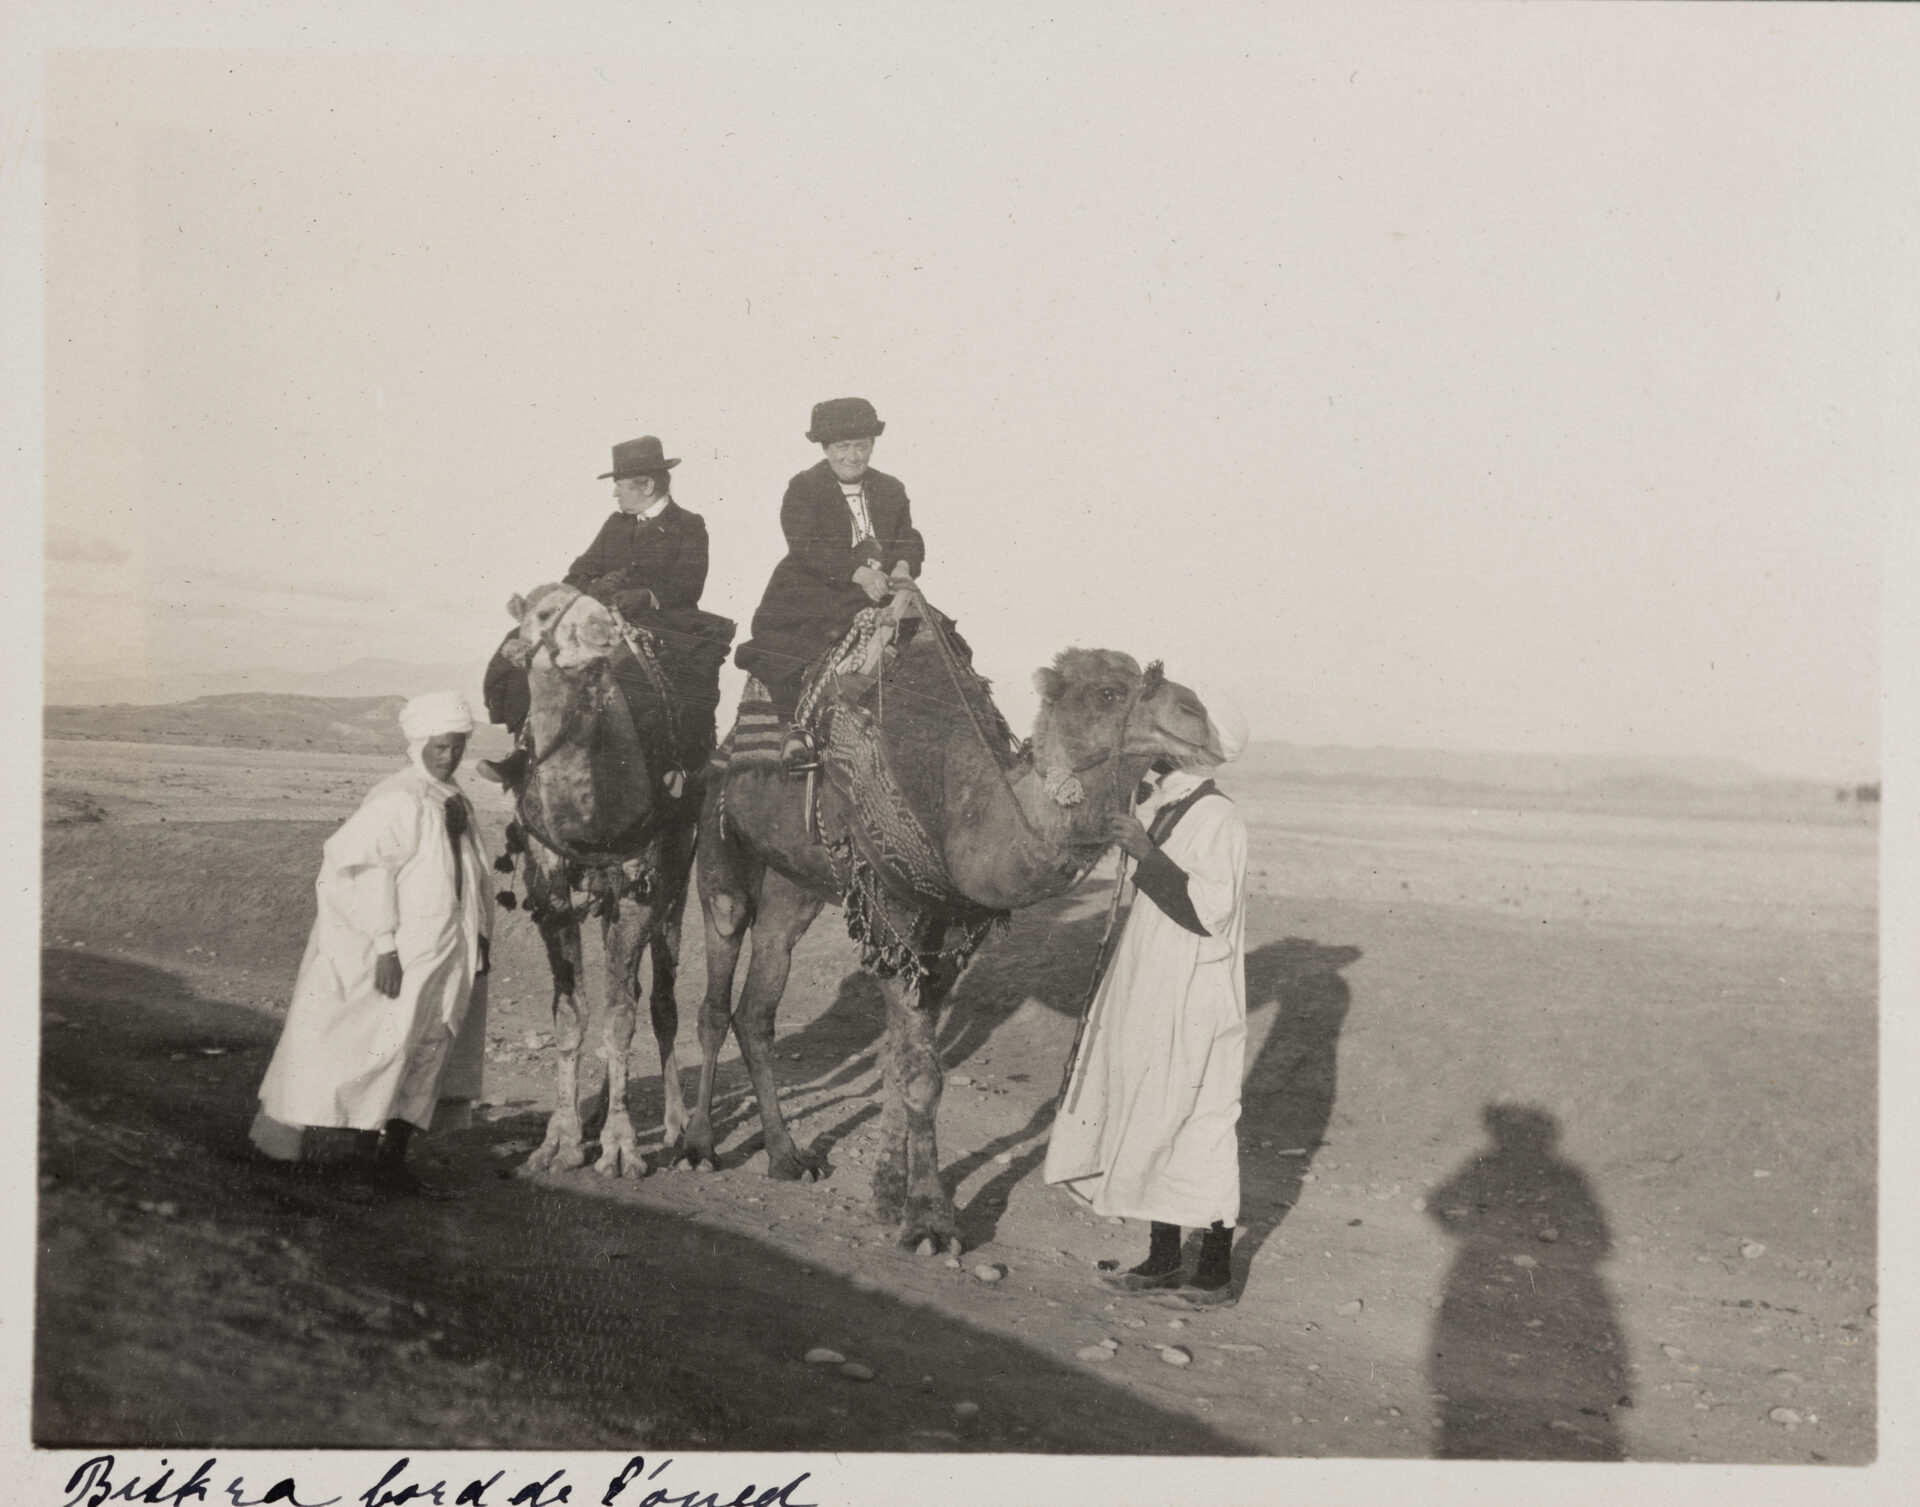 Ottilie W. Roederstein (l.) und Jeanne Smith (r.) auf Kamelen mit zwei einheimischen Führern in der Gegend um Biskra, Algerien, 22. November – 22. Dezember 1913, Fotografie